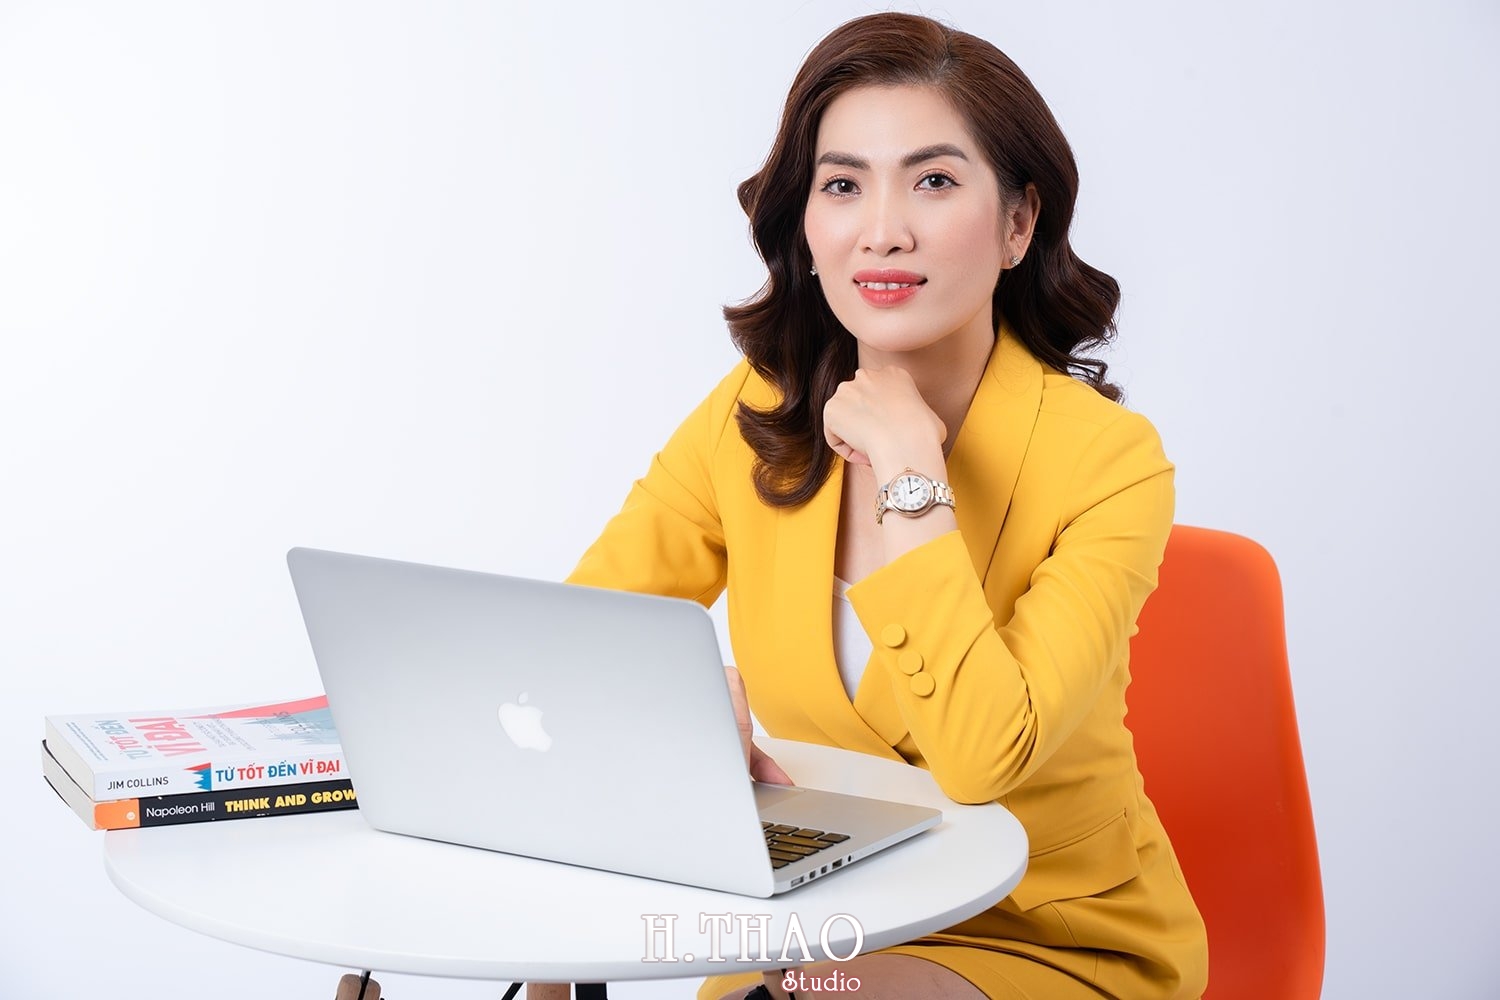 Doanh nhan nu dep 3 - Dịch vụ chụp ảnh chân dung doanh nhân tại Tp.HCM - HThao Studio